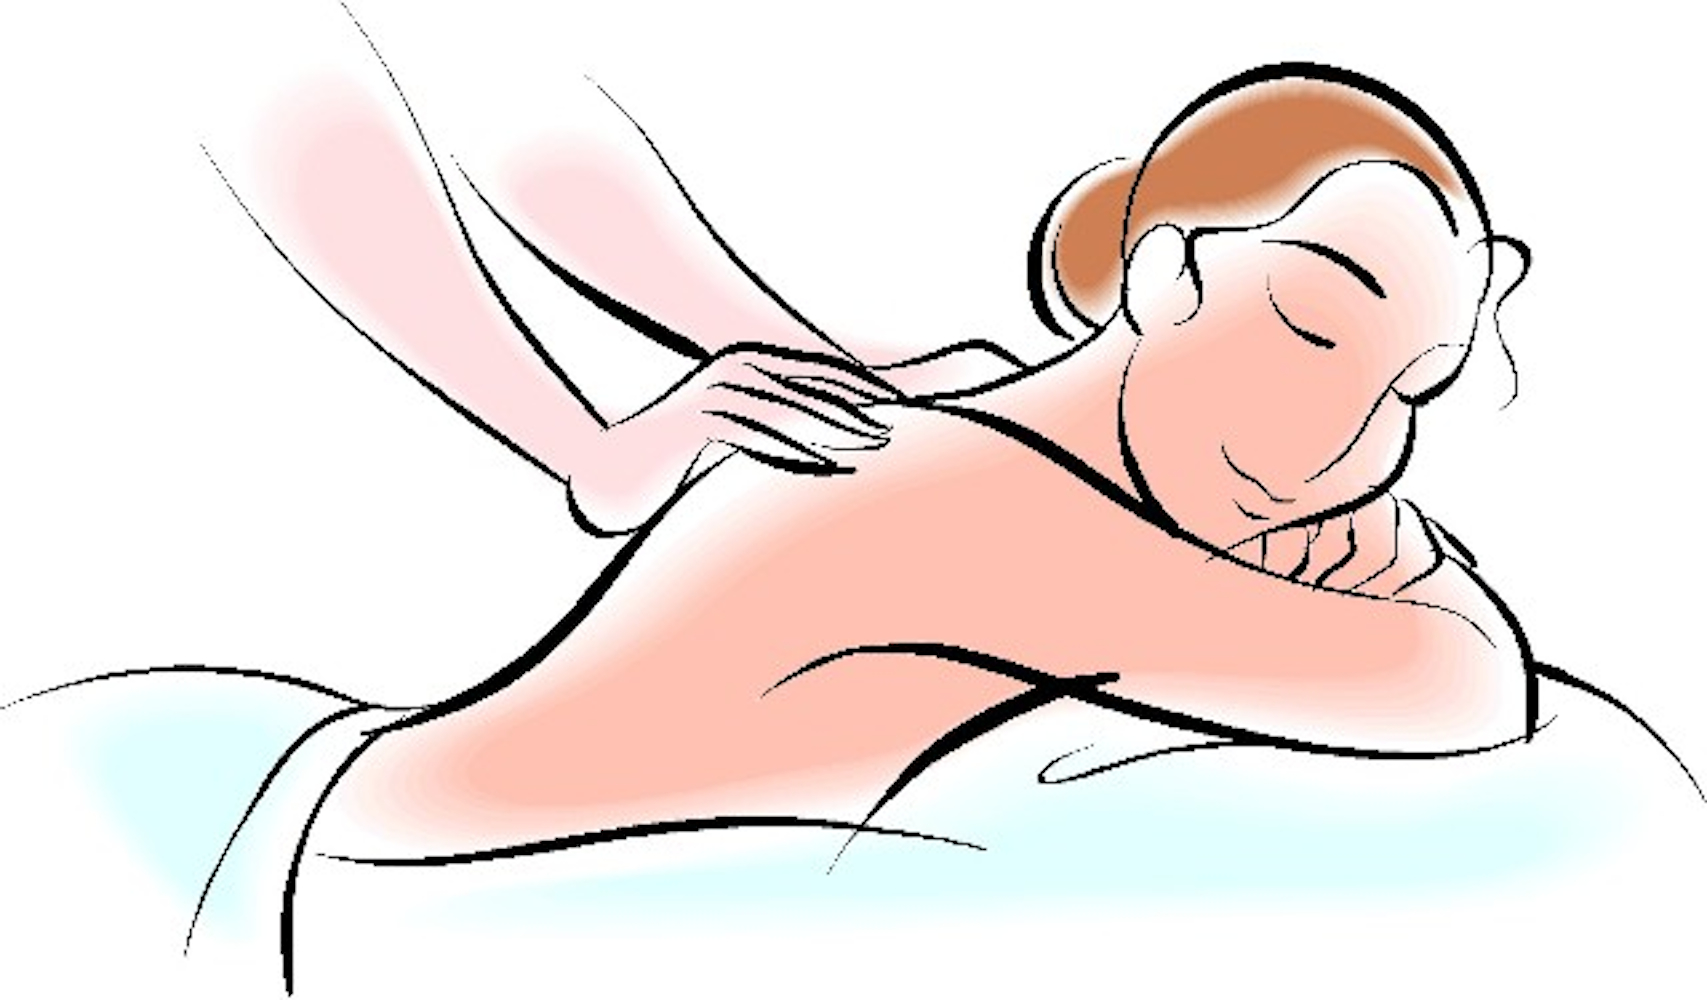 massages clipart person